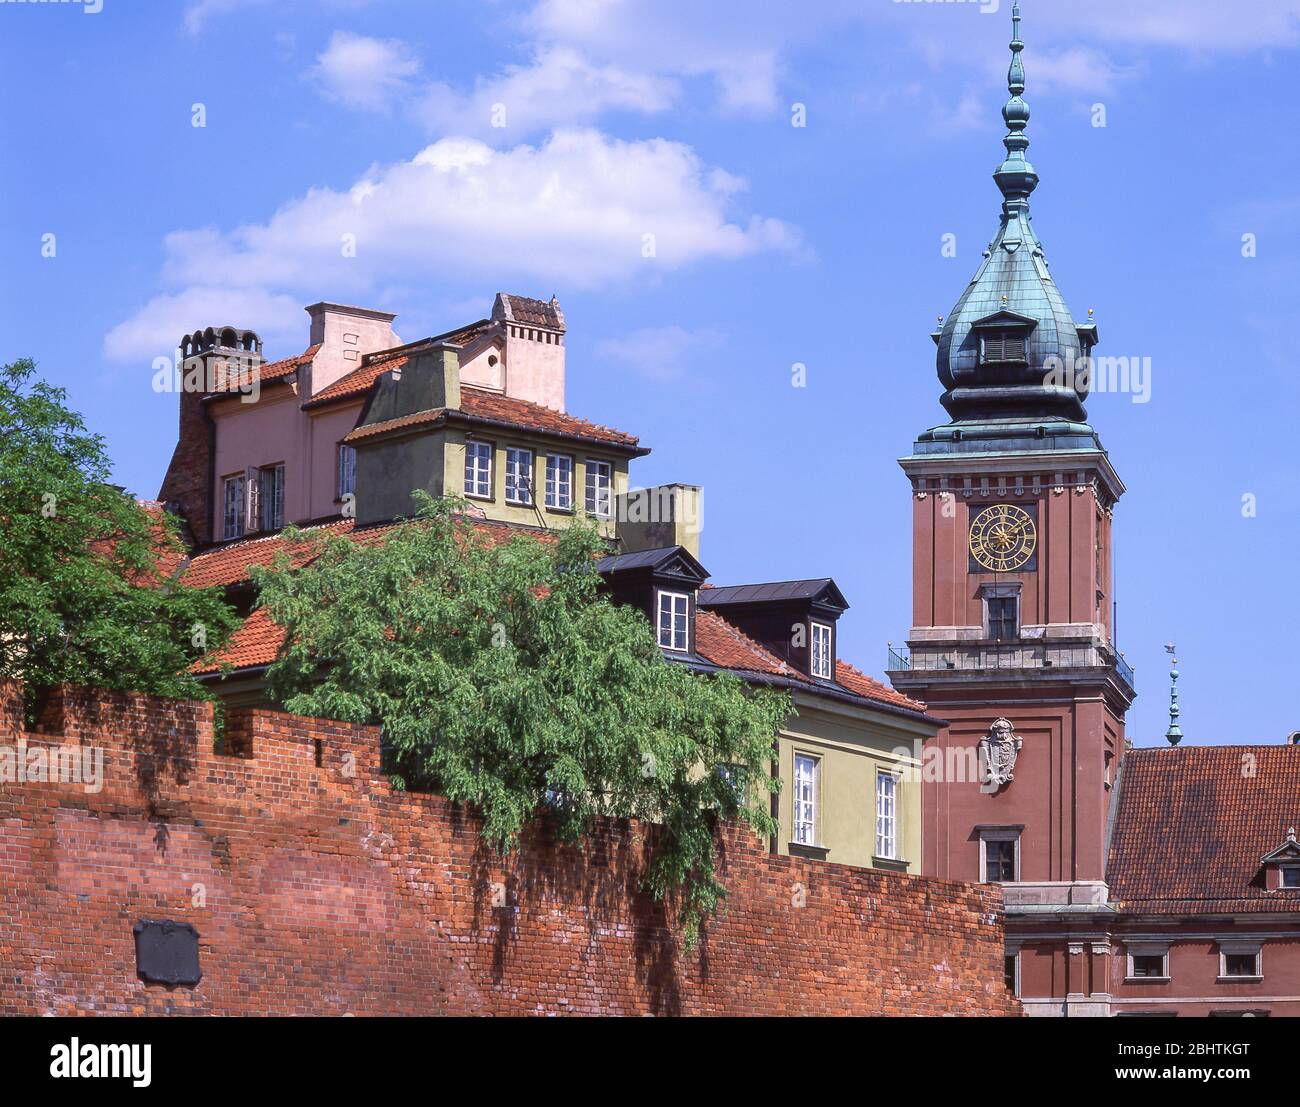 Königliches Schloss Uhrturm, Schlossplatz (Plac Zamkowy), Altstadt, Warschau (Warszawa), Republik Polen Stockfoto